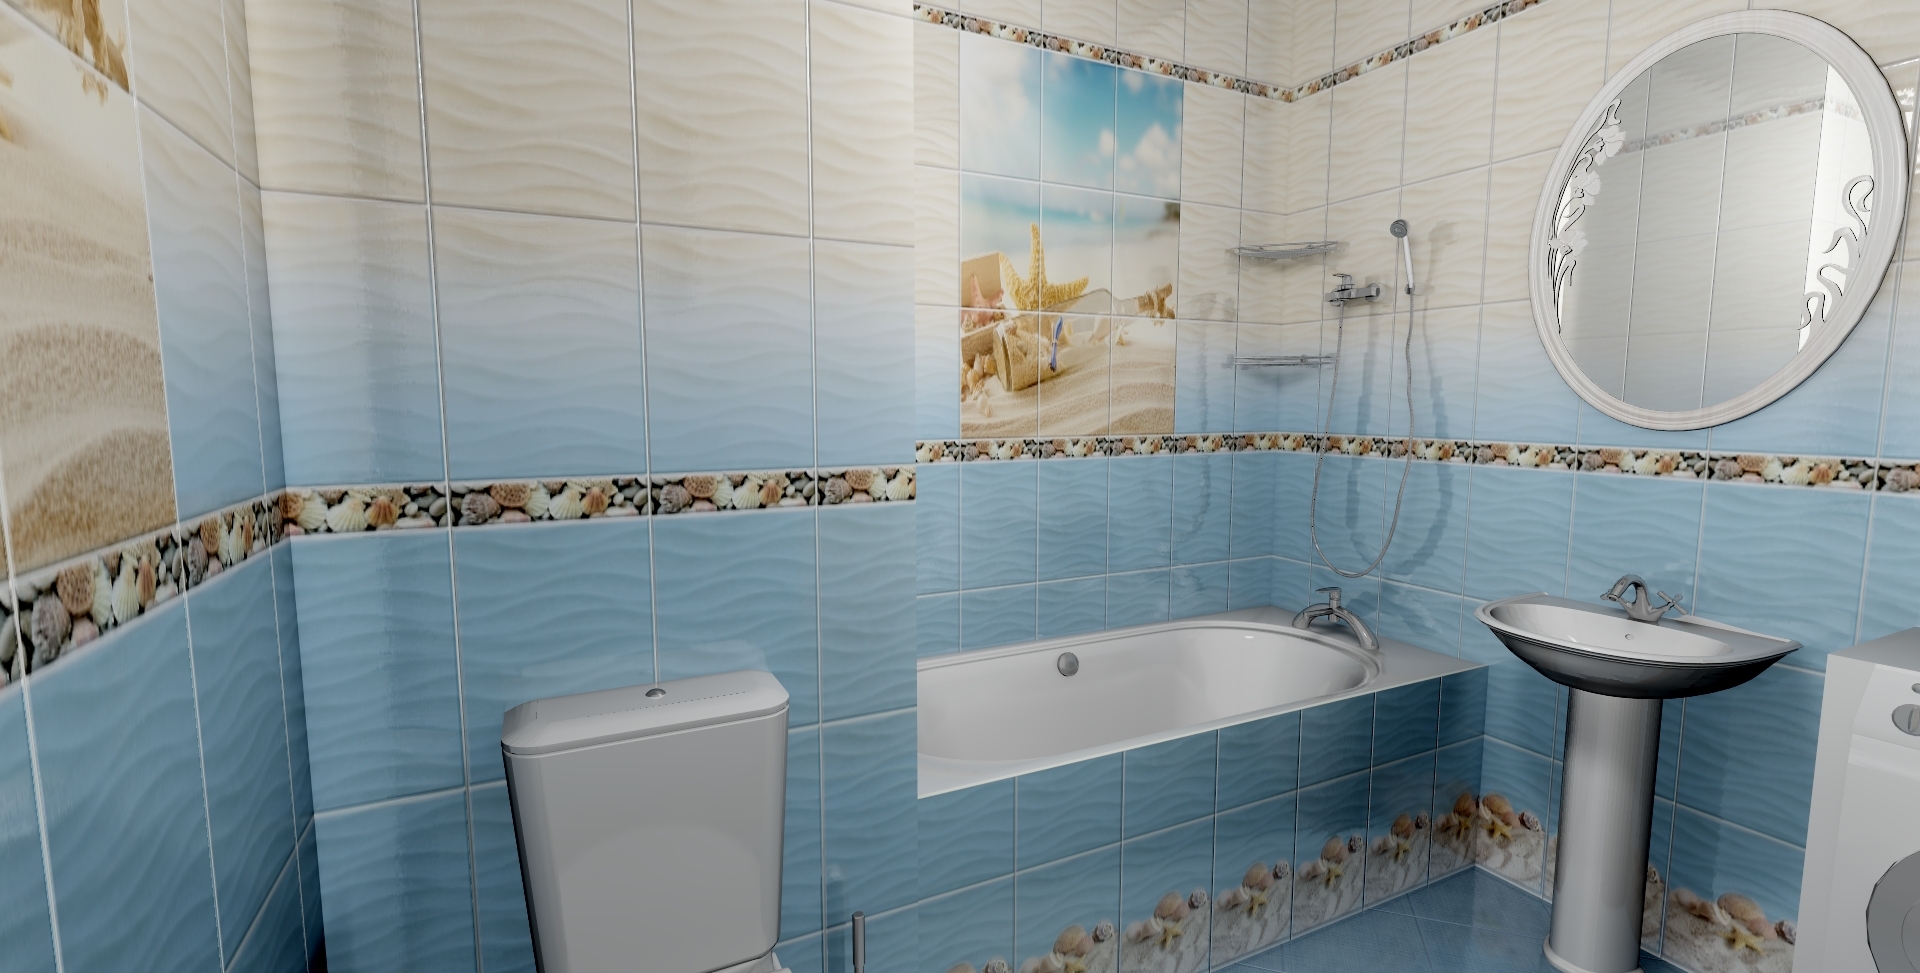 Дизайн ванной комнаты отделка стеновыми панелями